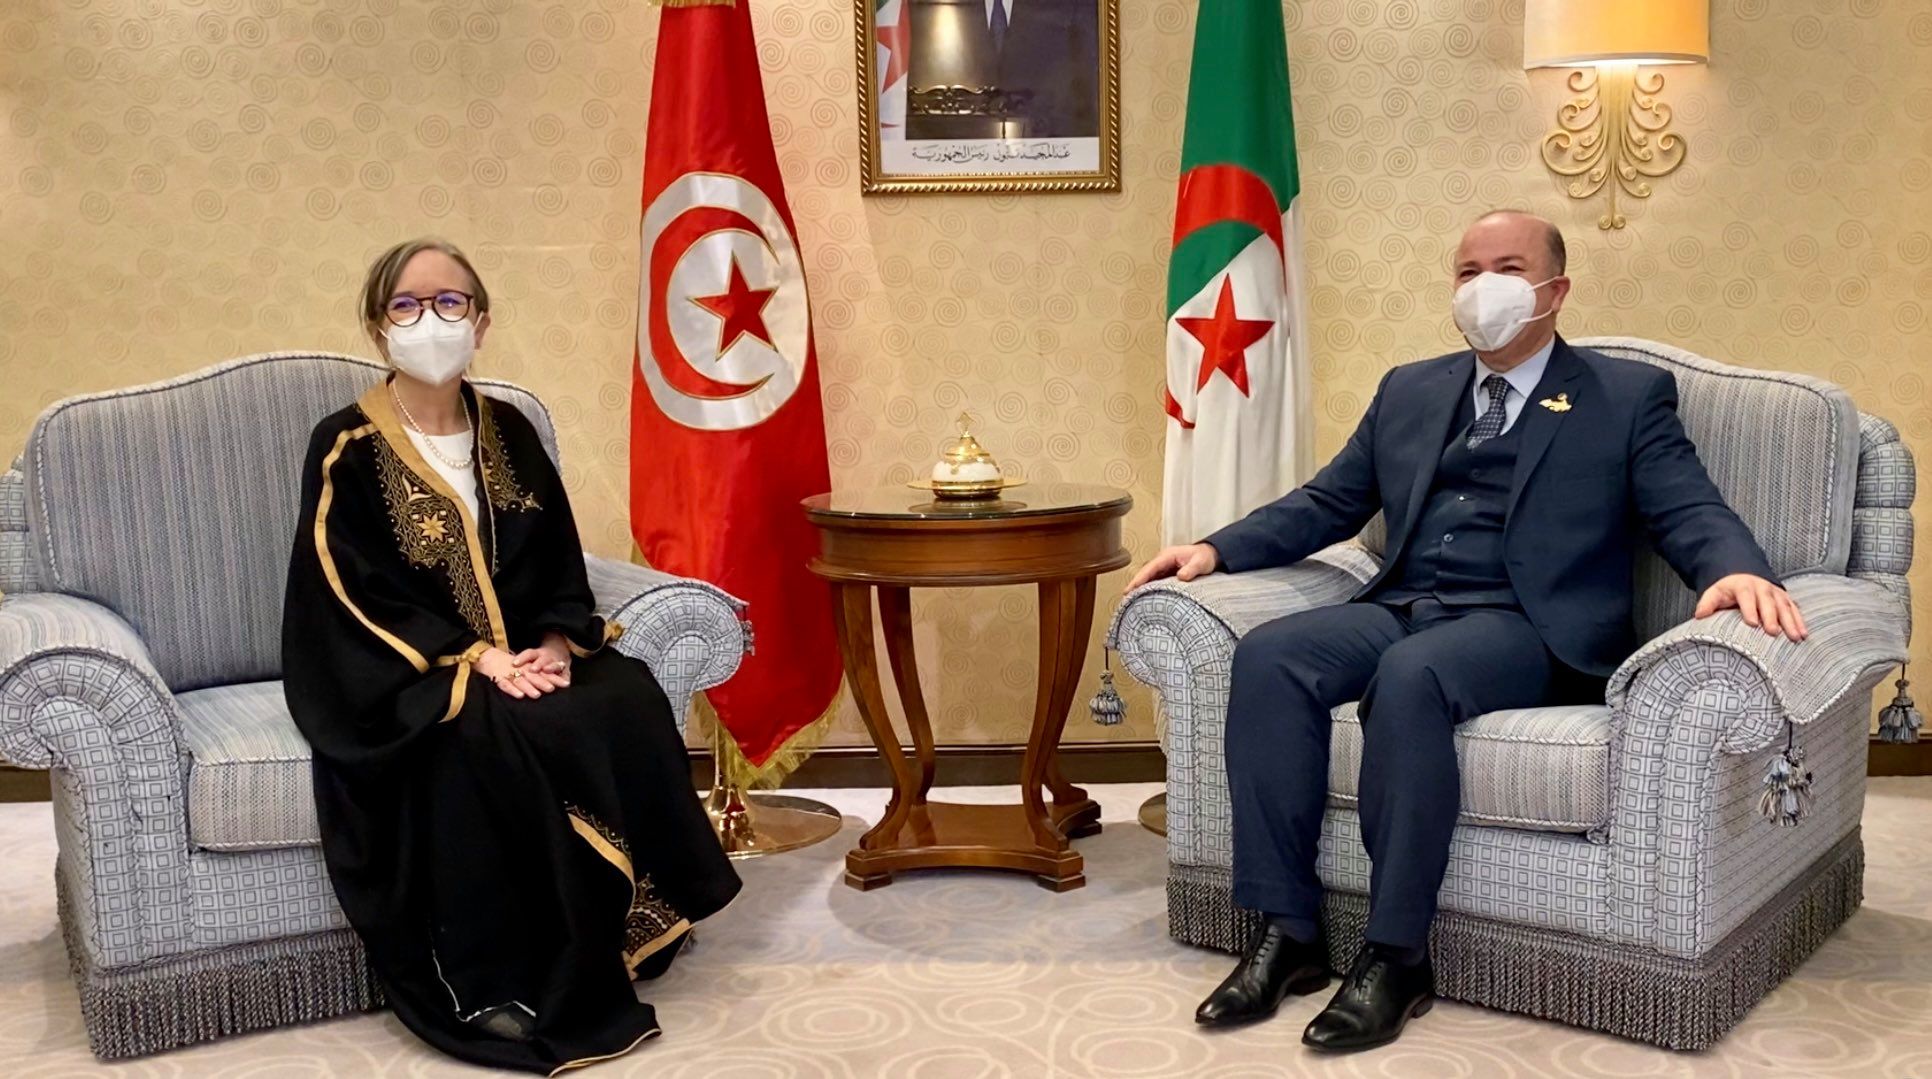 الوزير الأول يستقبل رئيسة الحكومة التونسية بمقر إقامته بالرياض